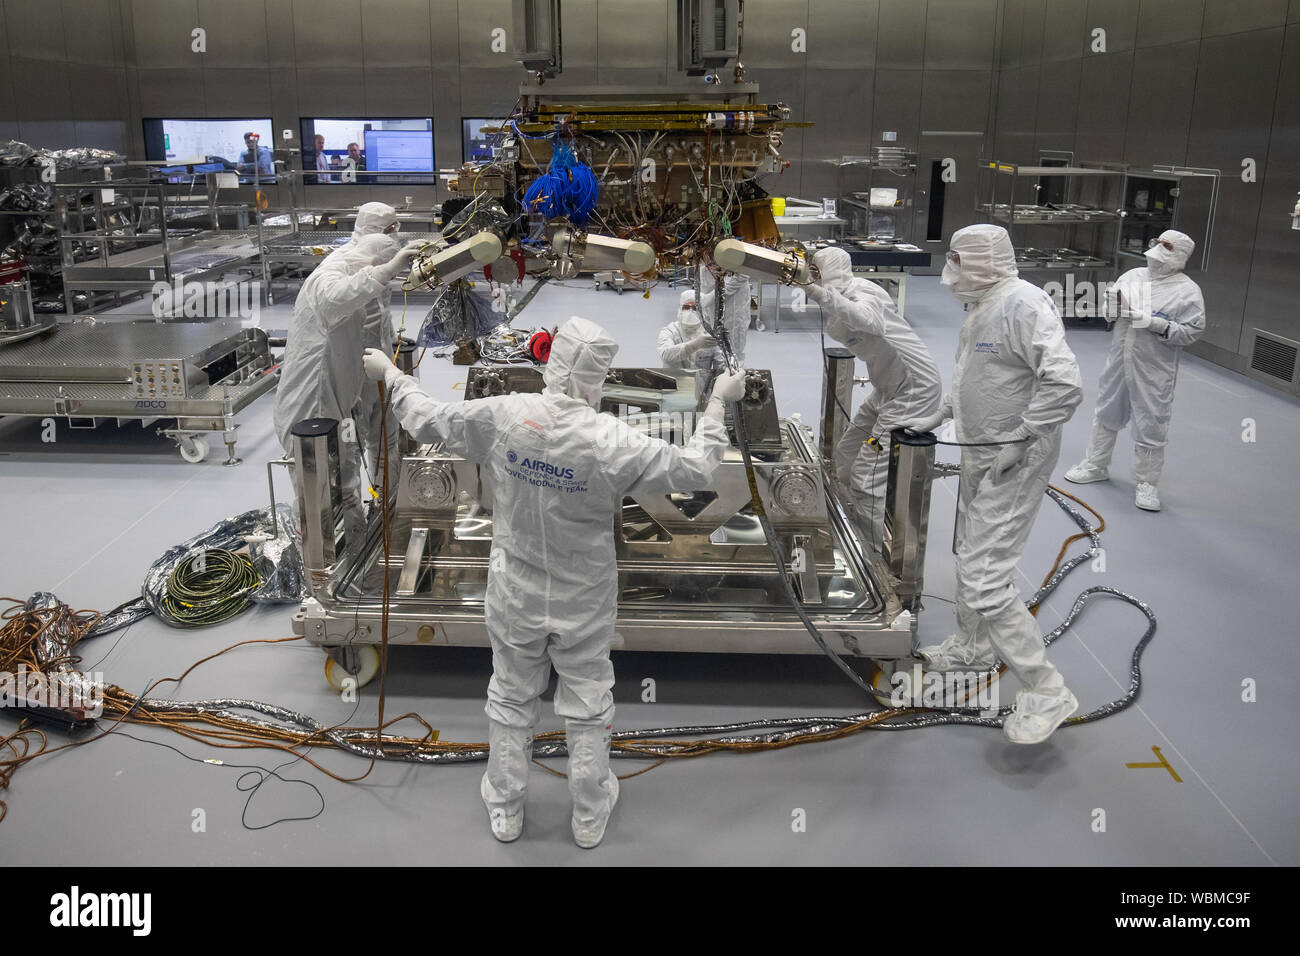 ExoMars rover dell'Agenzia spaziale europea è pronta a lasciare Airbus a Stevenage. La ExoMars 2020 rover Rosalind Franklin è la prima rover planetaria d'Europa che cercherà i segni della vita passata o presente su Marte. Foto Stock